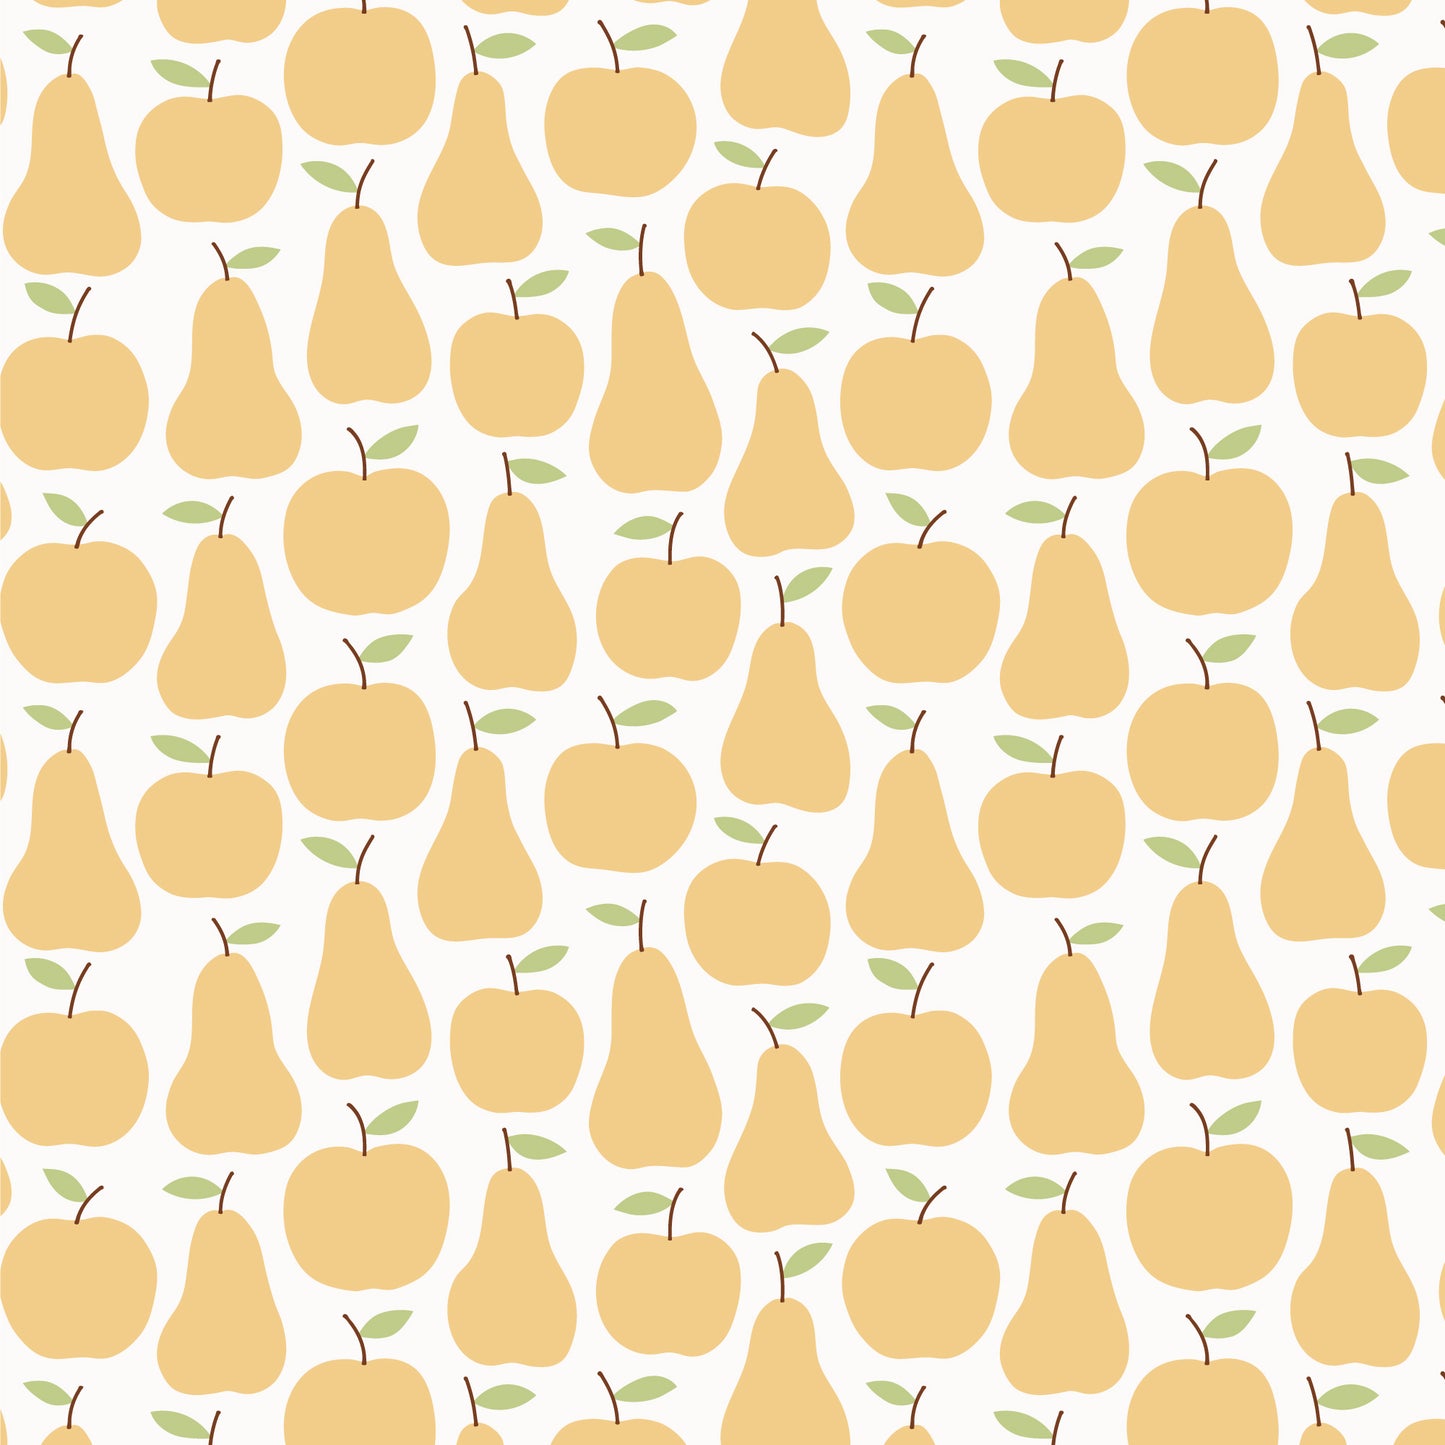 Women's Helsinki Dress - Apples & Pears Yellow